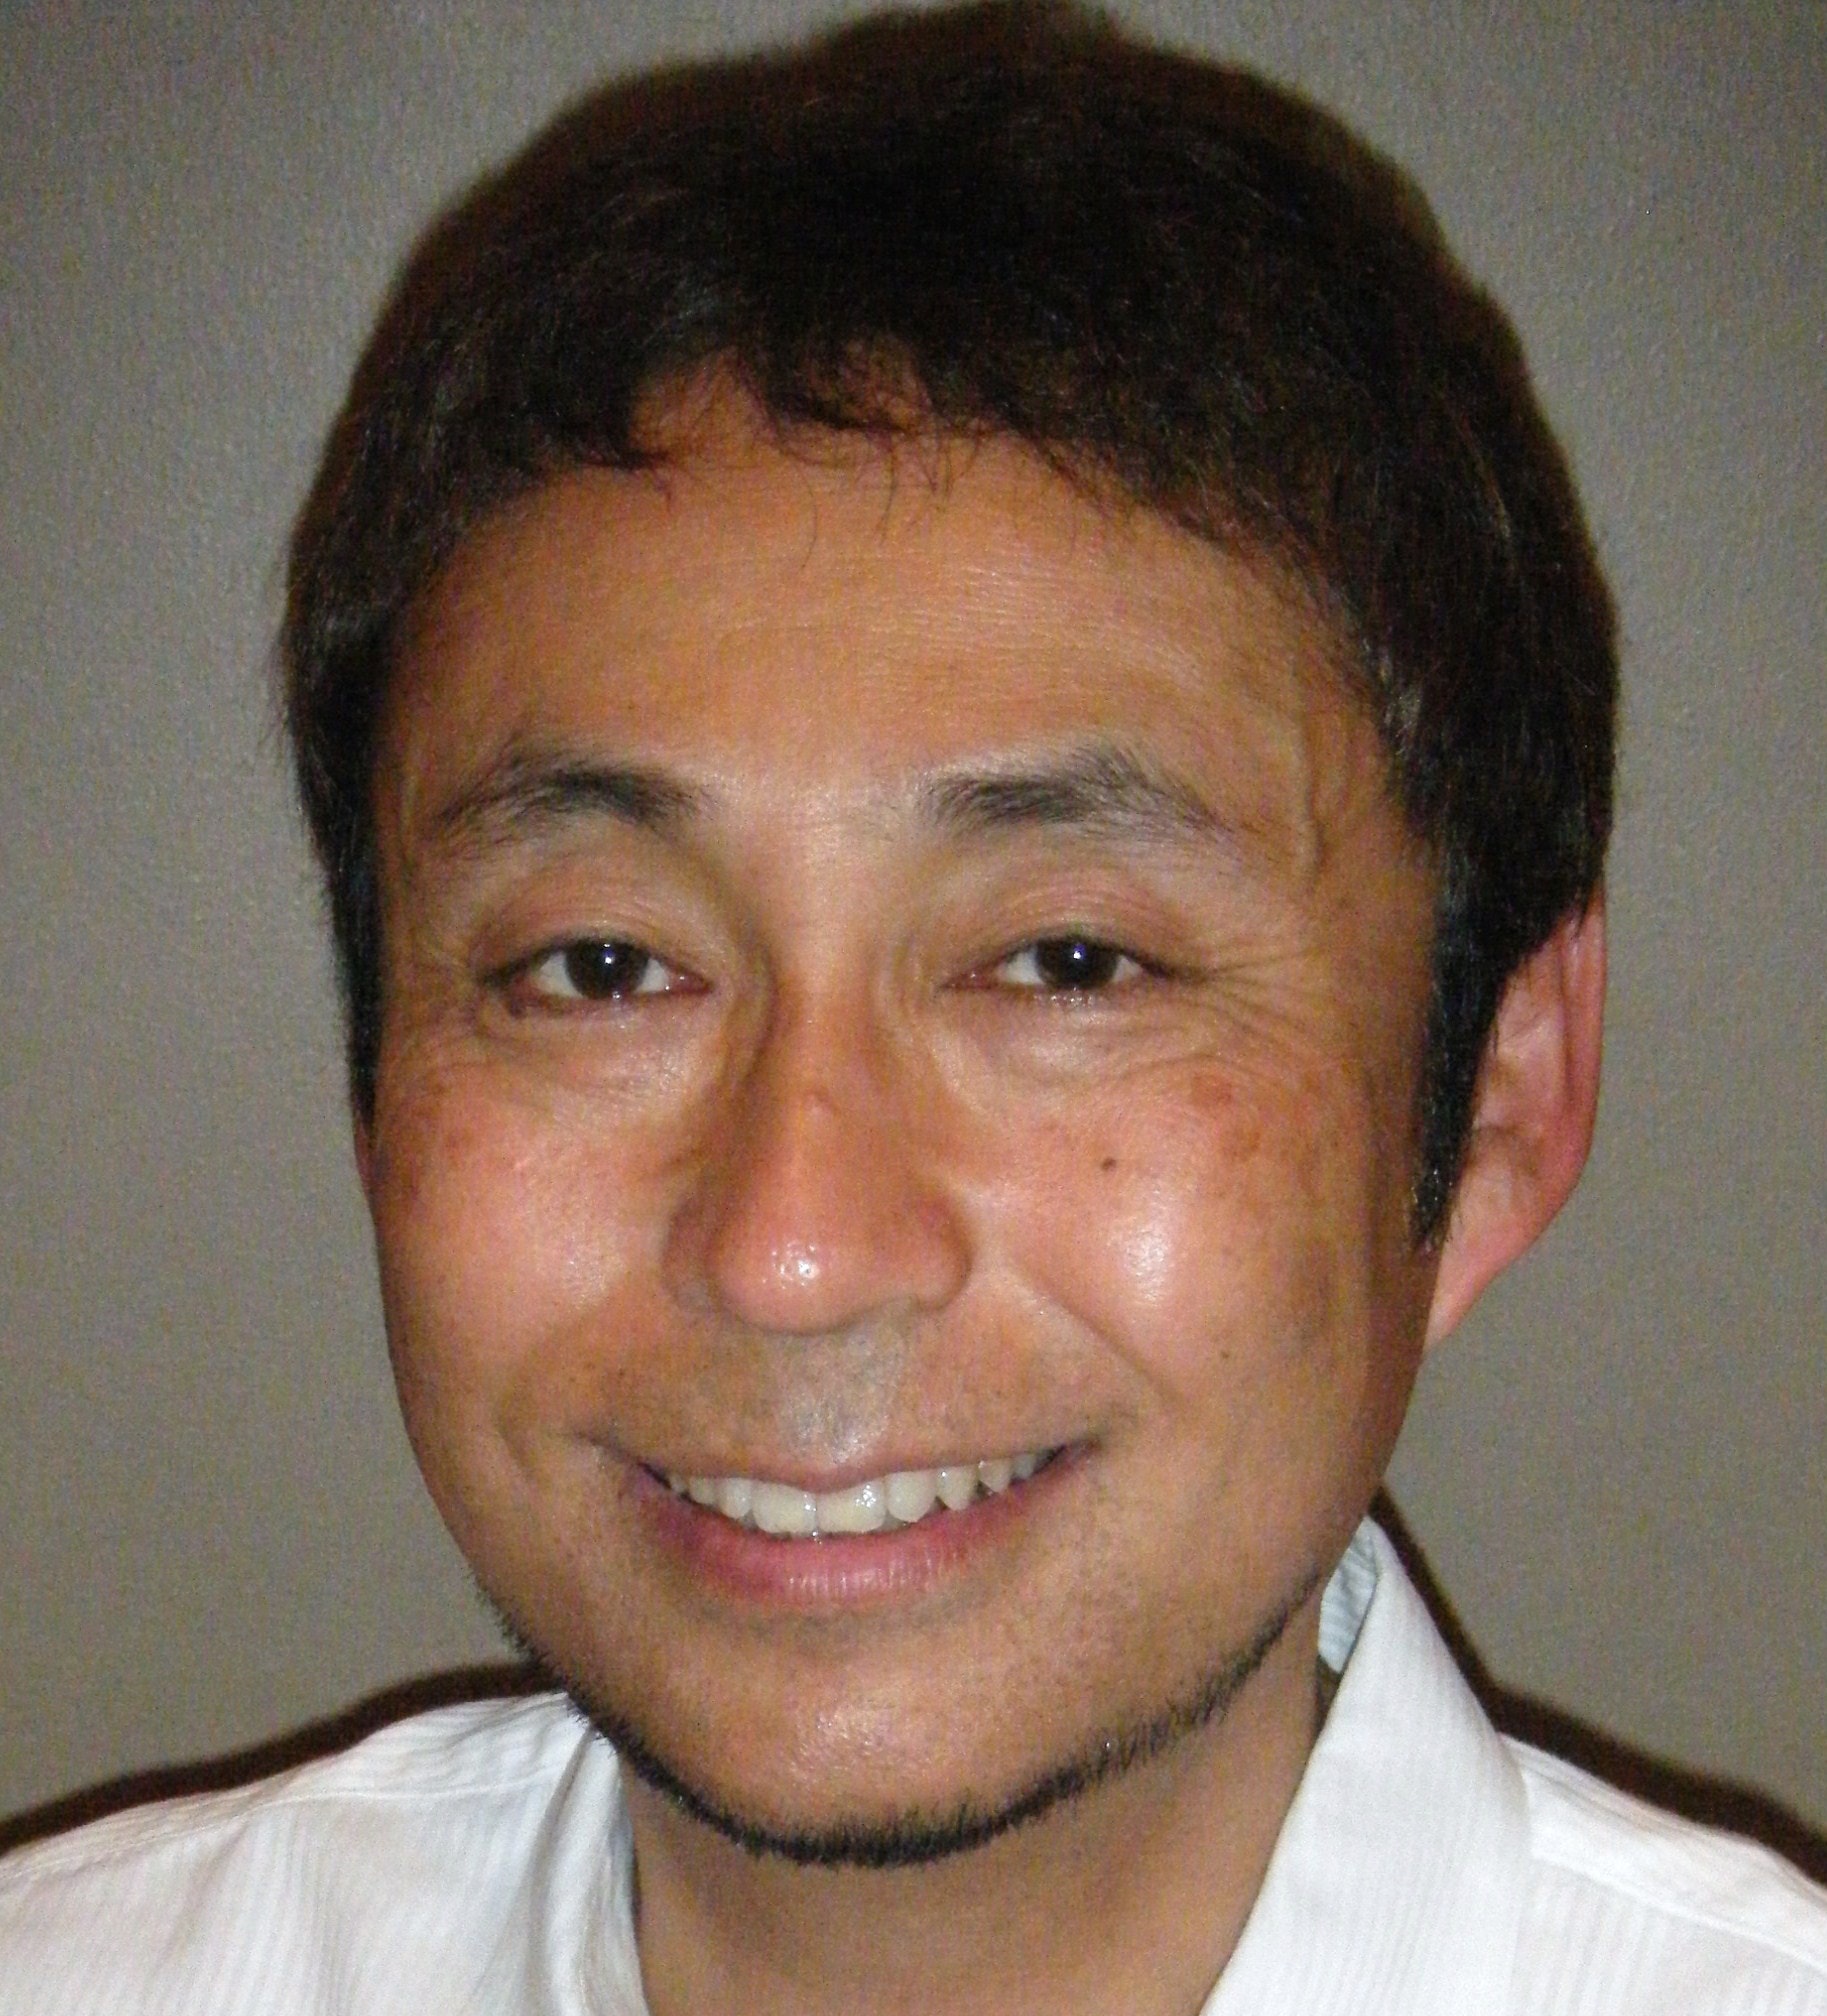 Michihiro Kandori